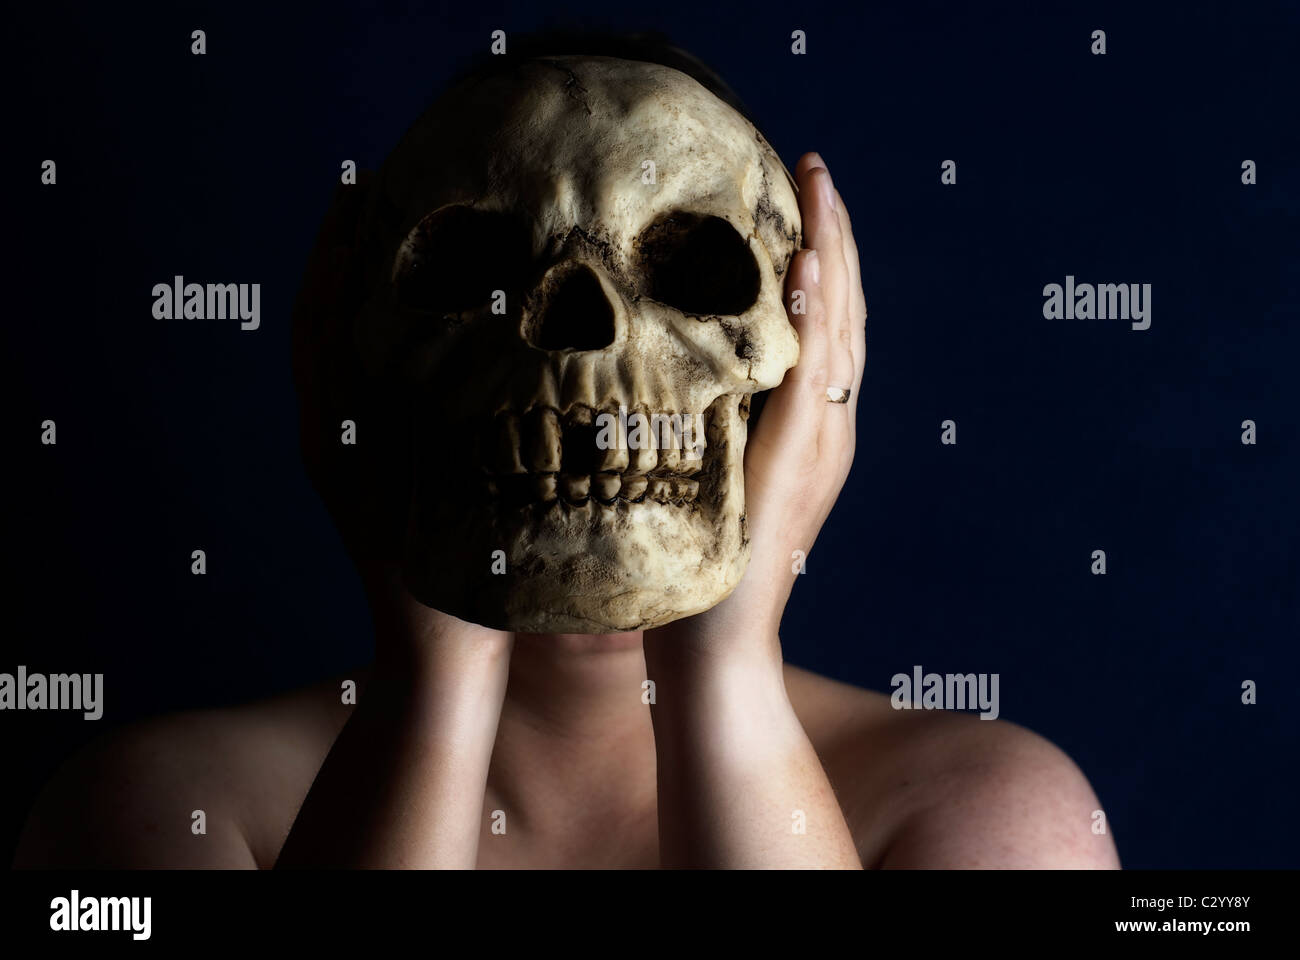 Una mujer sostiene un cráneo humano delante de su cara contra un fondo negro. Foto de stock